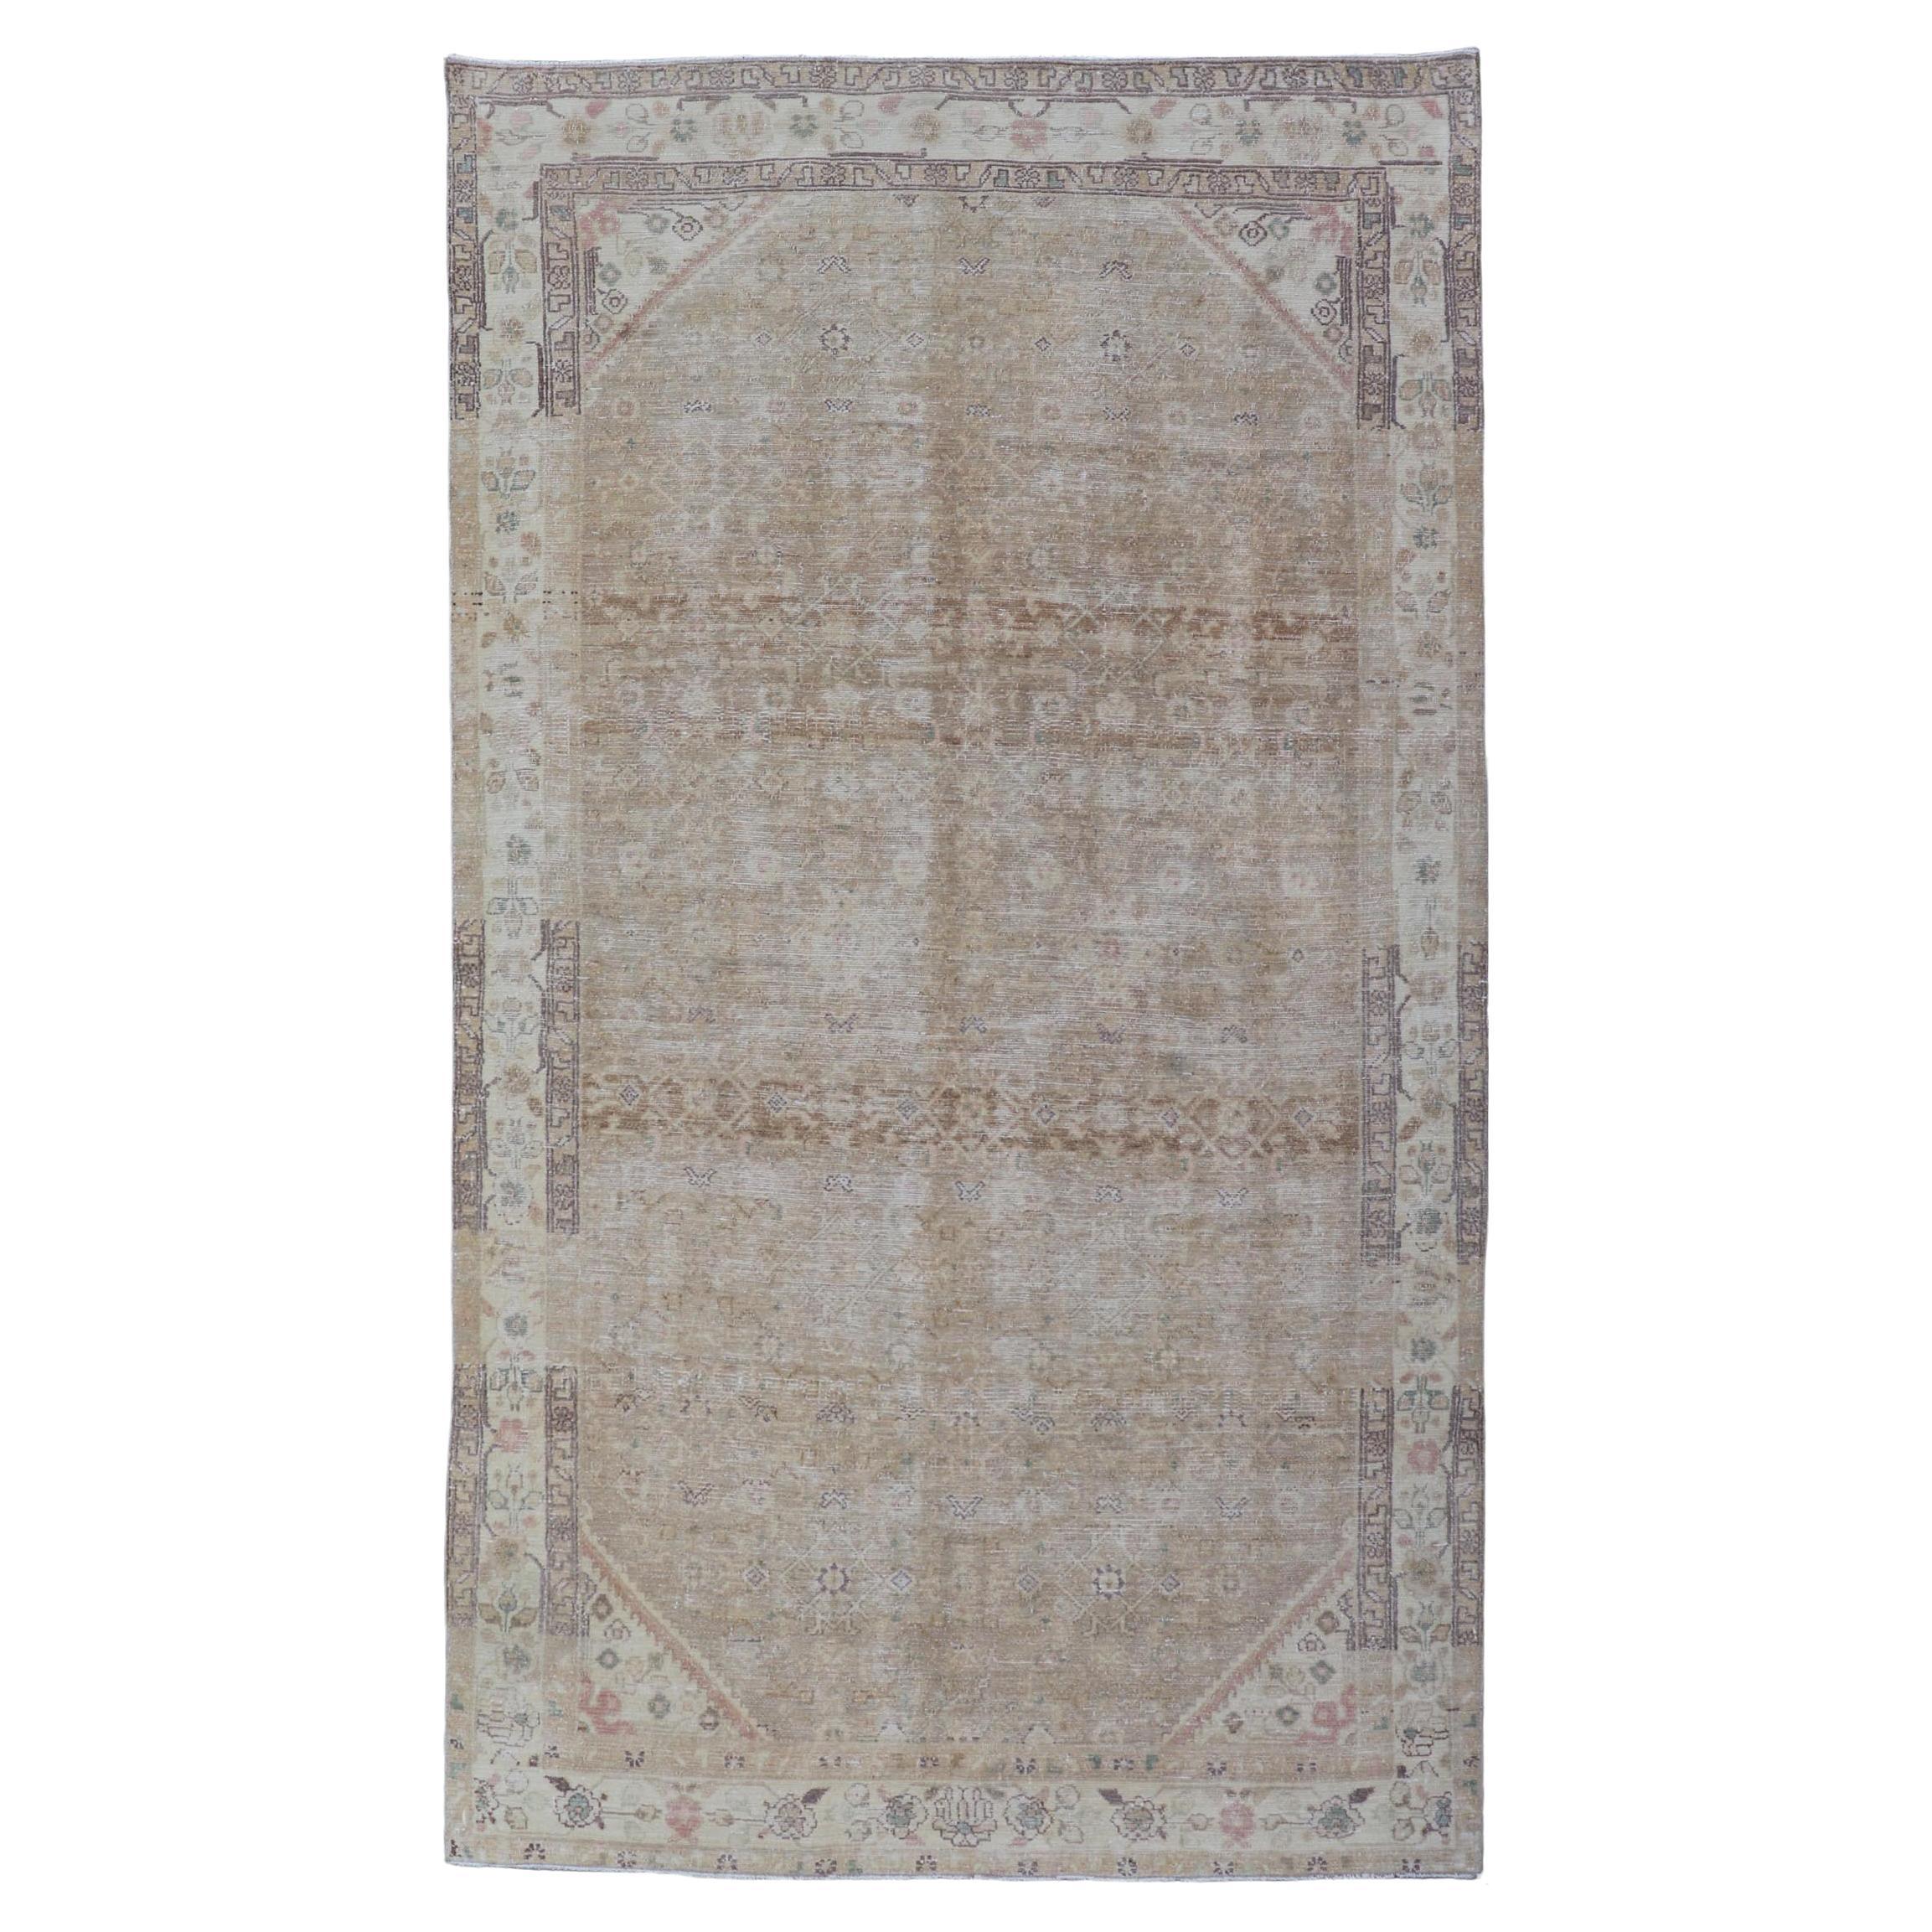 Persischer Hamedan-Galerie-Teppich mit subgeometrischem Muster in Erdtönen